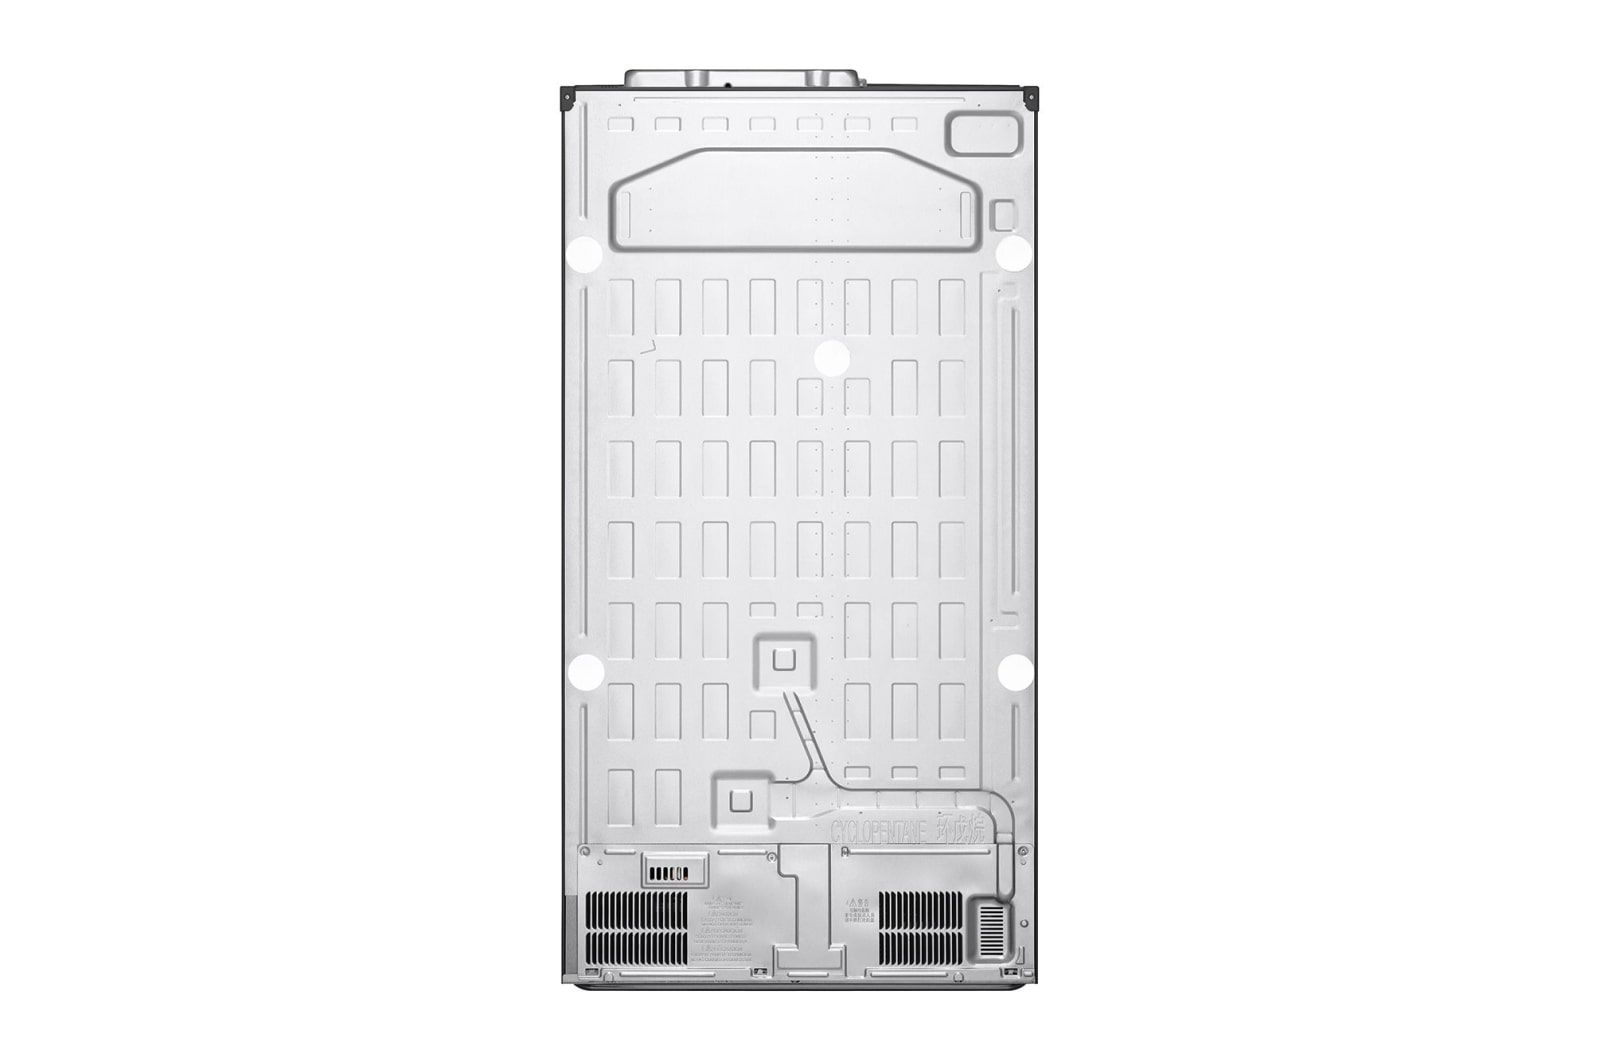 Холодильник LG GC-B257SMZV